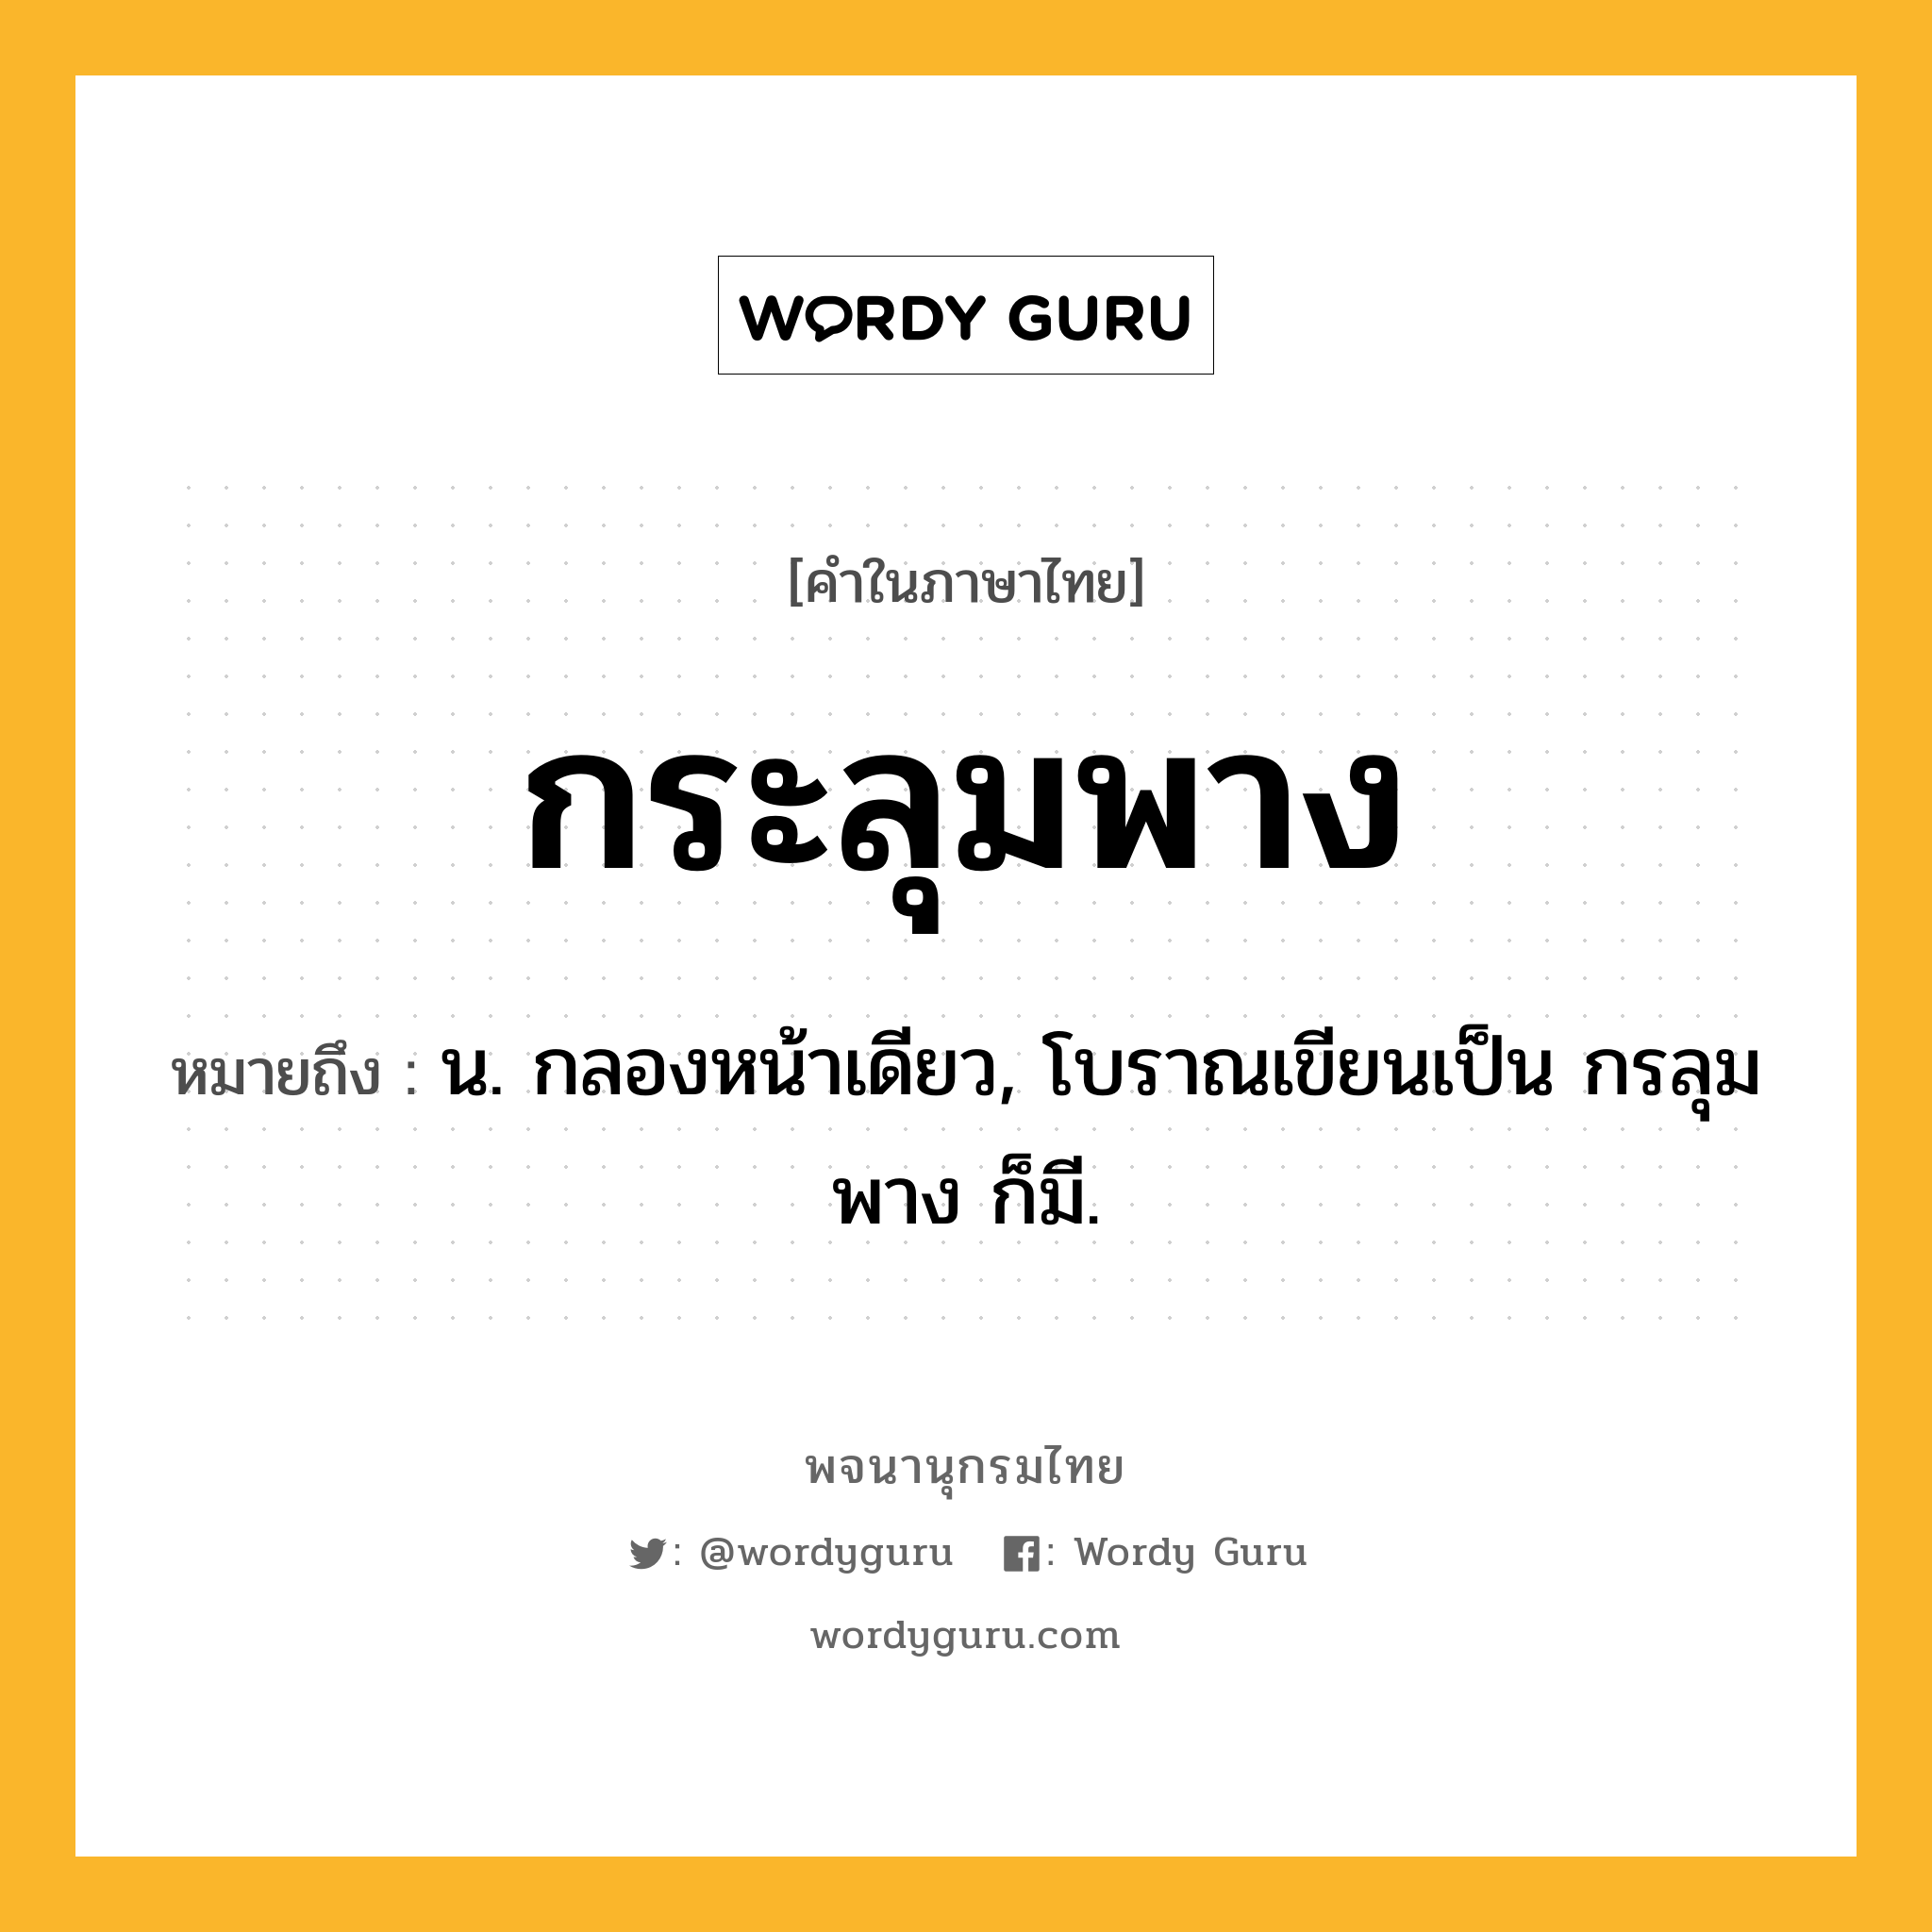 กระลุมพาง หมายถึงอะไร?, คำในภาษาไทย กระลุมพาง หมายถึง น. กลองหน้าเดียว, โบราณเขียนเป็น กรลุมพาง ก็มี.